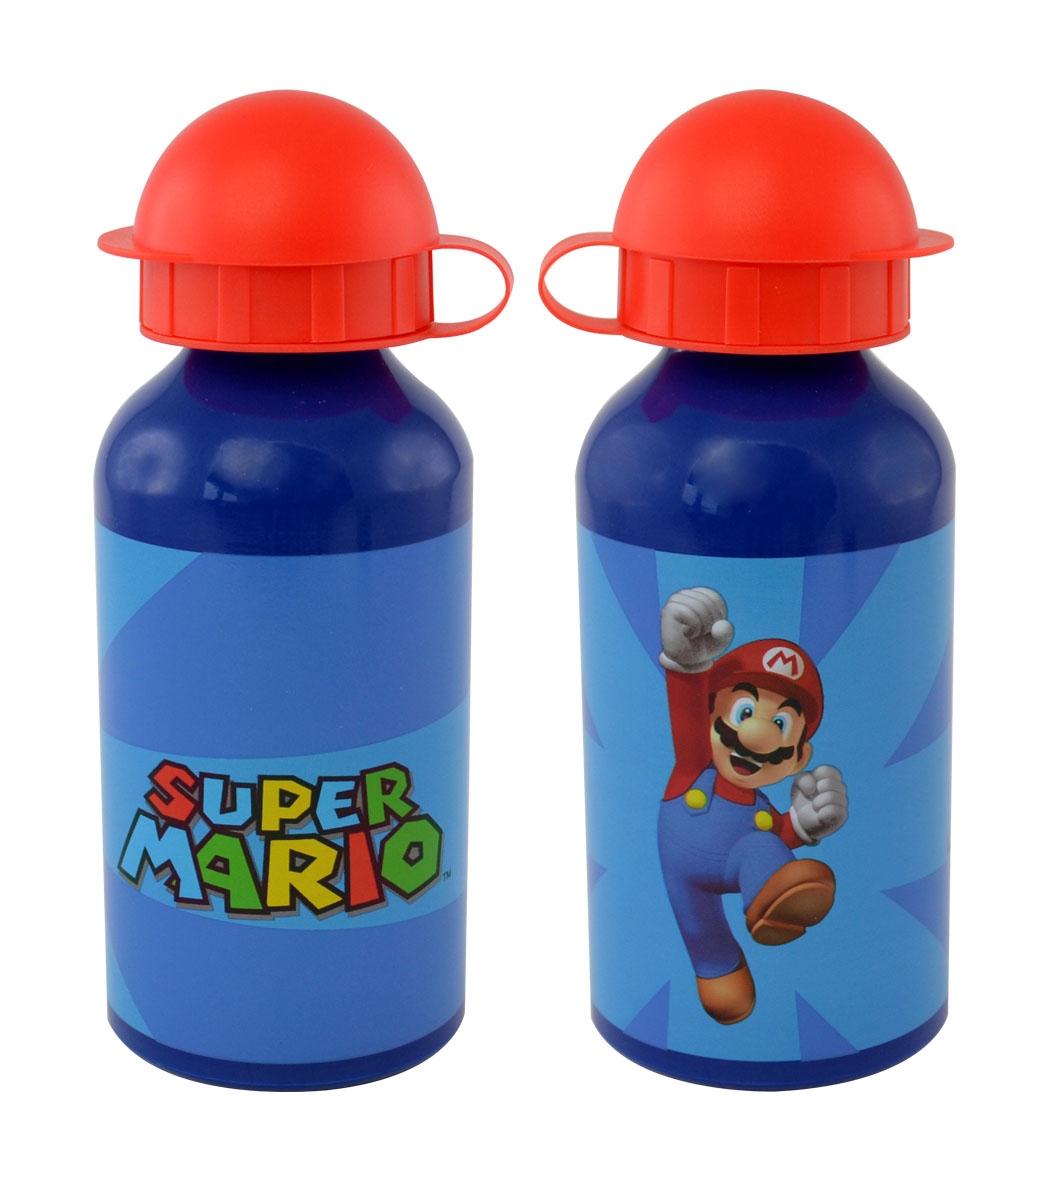 Super Mario - Gourde Mario - Figurine-Discount